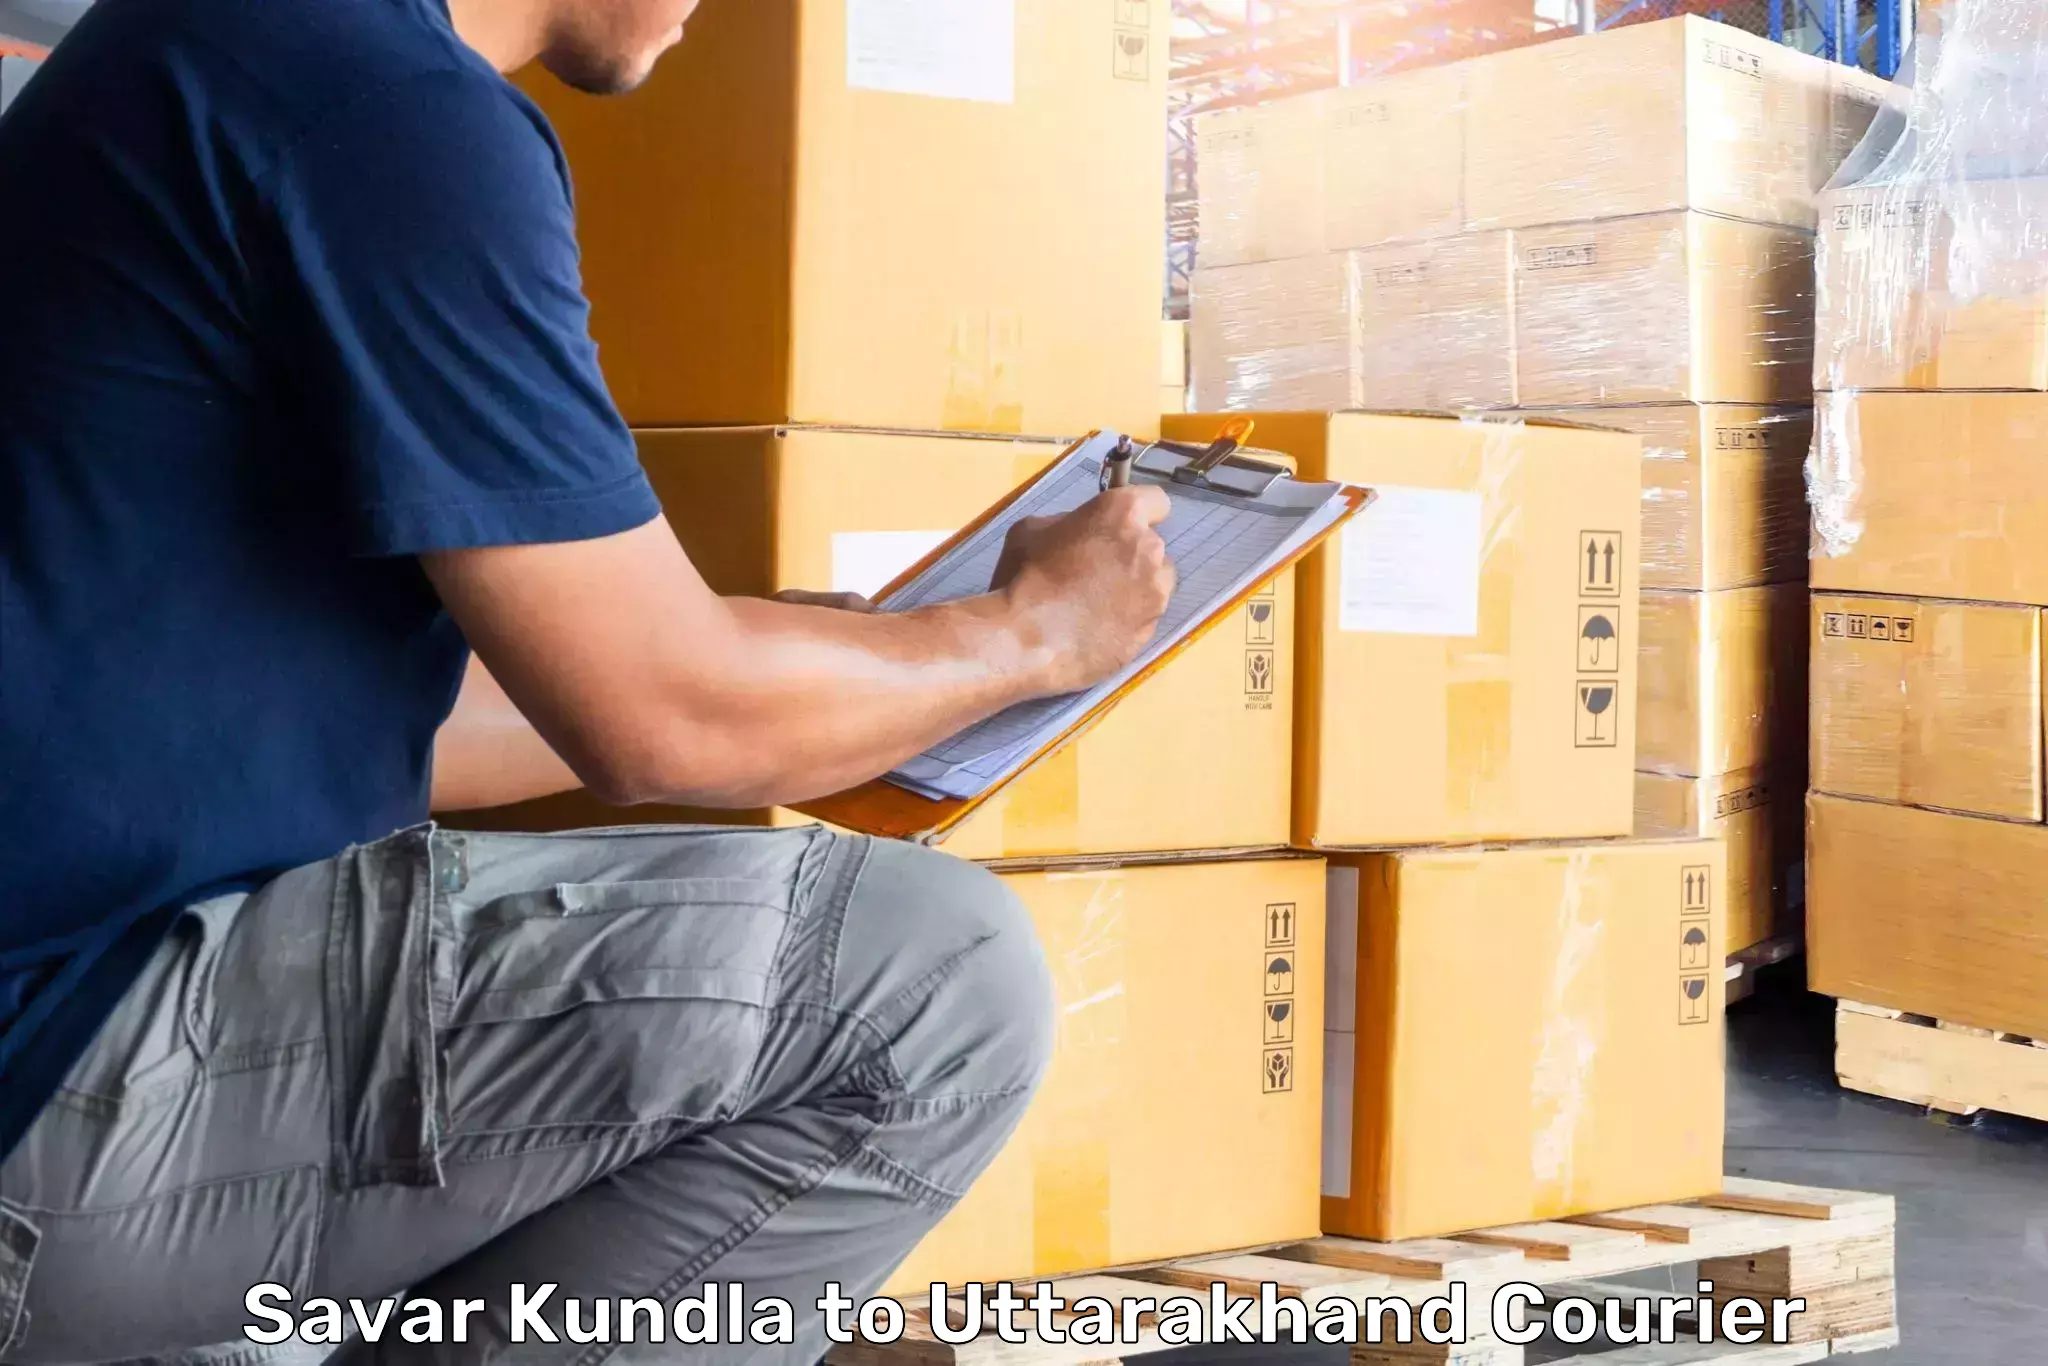 Luggage transport deals Savar Kundla to IIT Roorkee